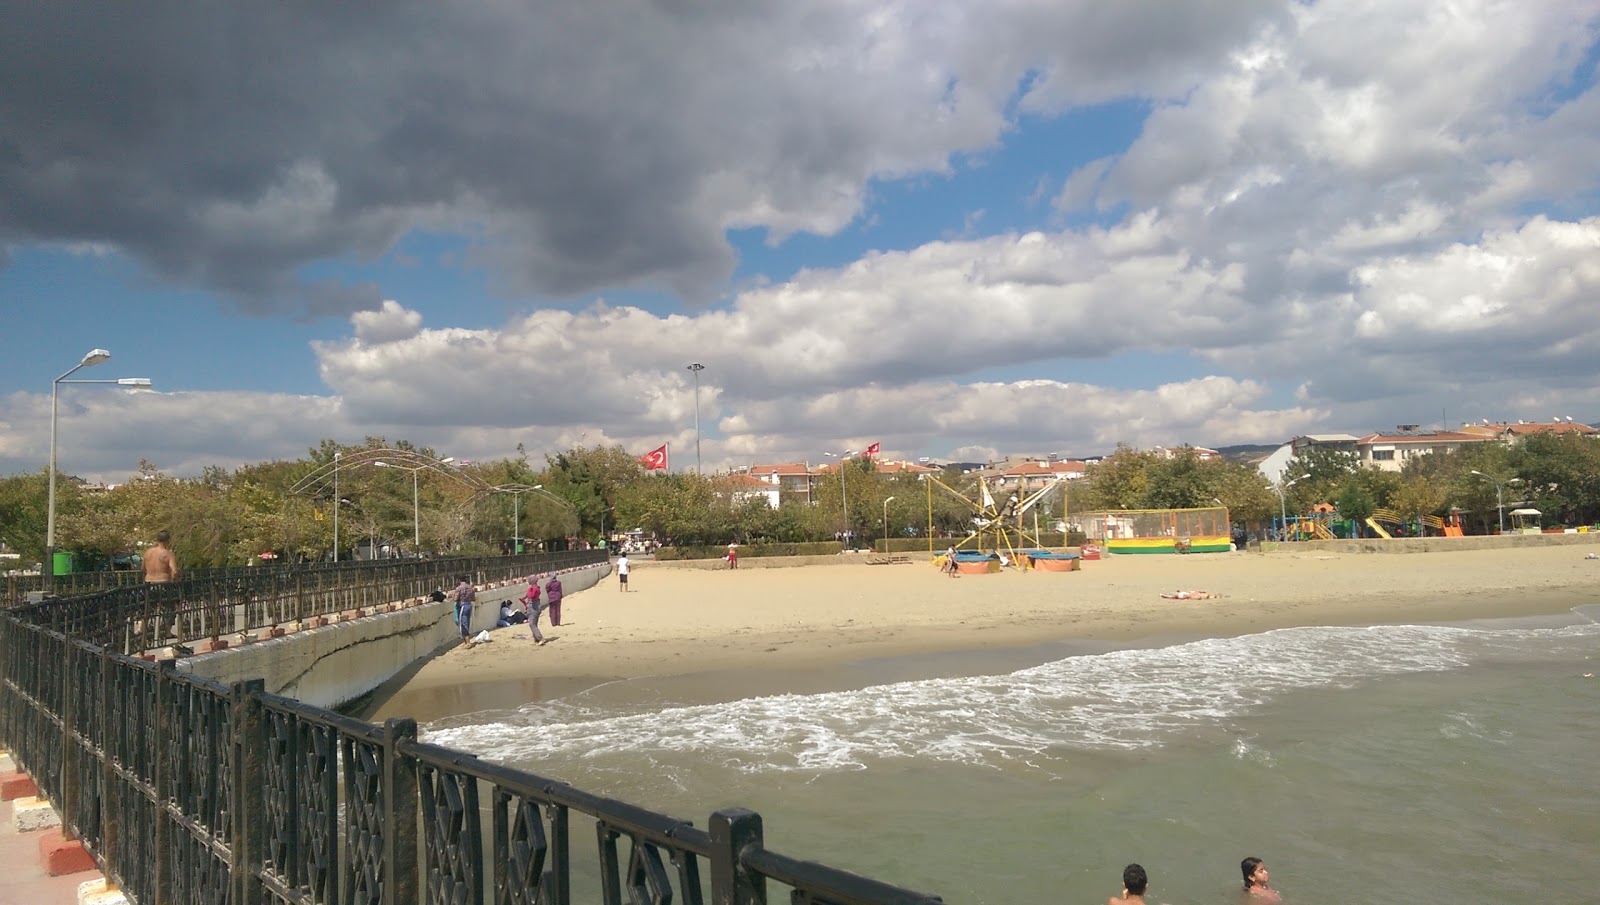 Sarkoy beach II'in fotoğrafı geniş plaj ile birlikte